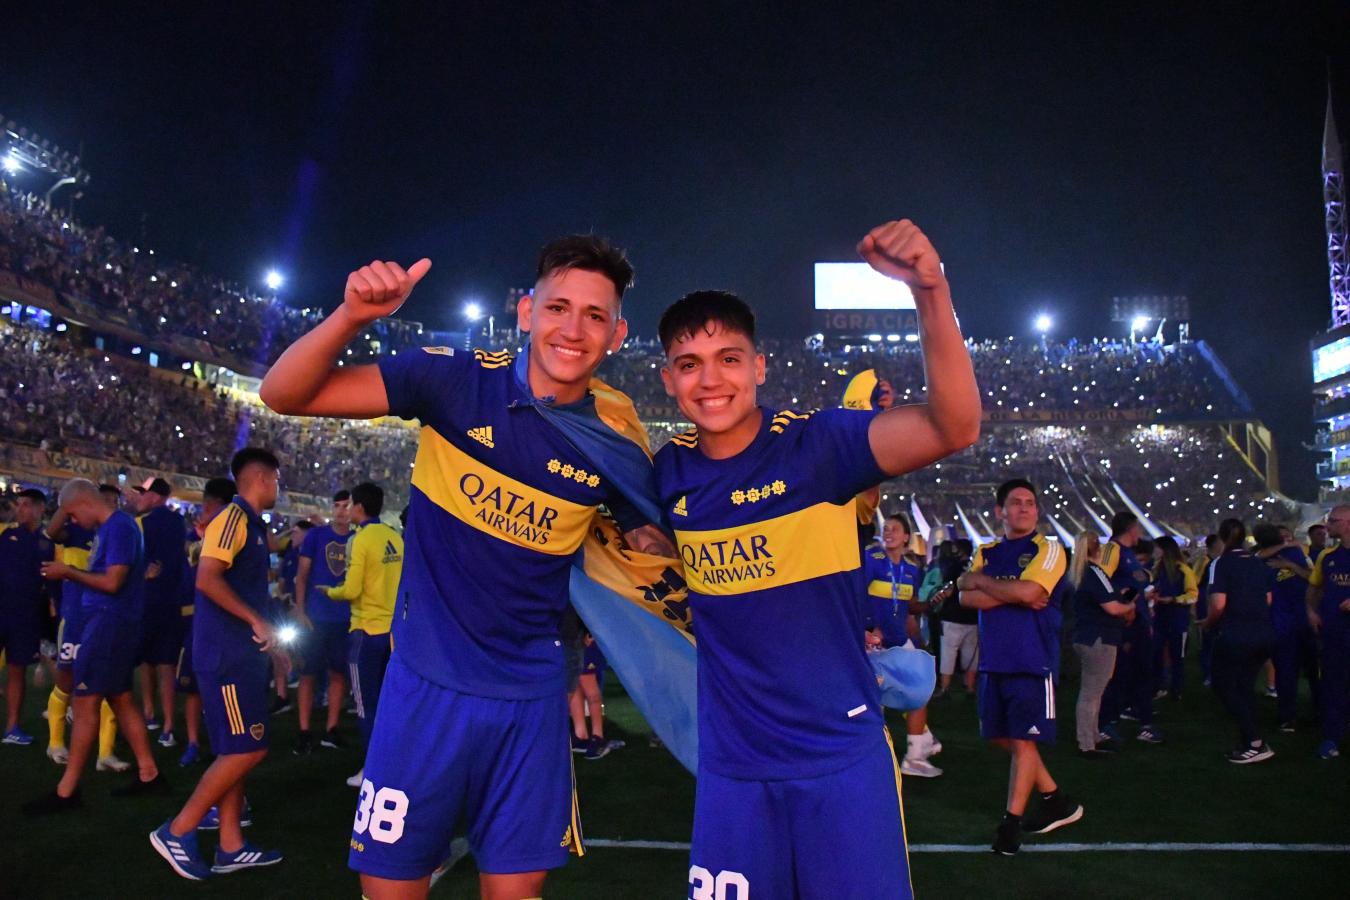 Imagen Los pibes de Boca a pura sonrisa. Vázquez y Zeballos, que marcaron ante Central Córdoba, y su alegría inocultable. 